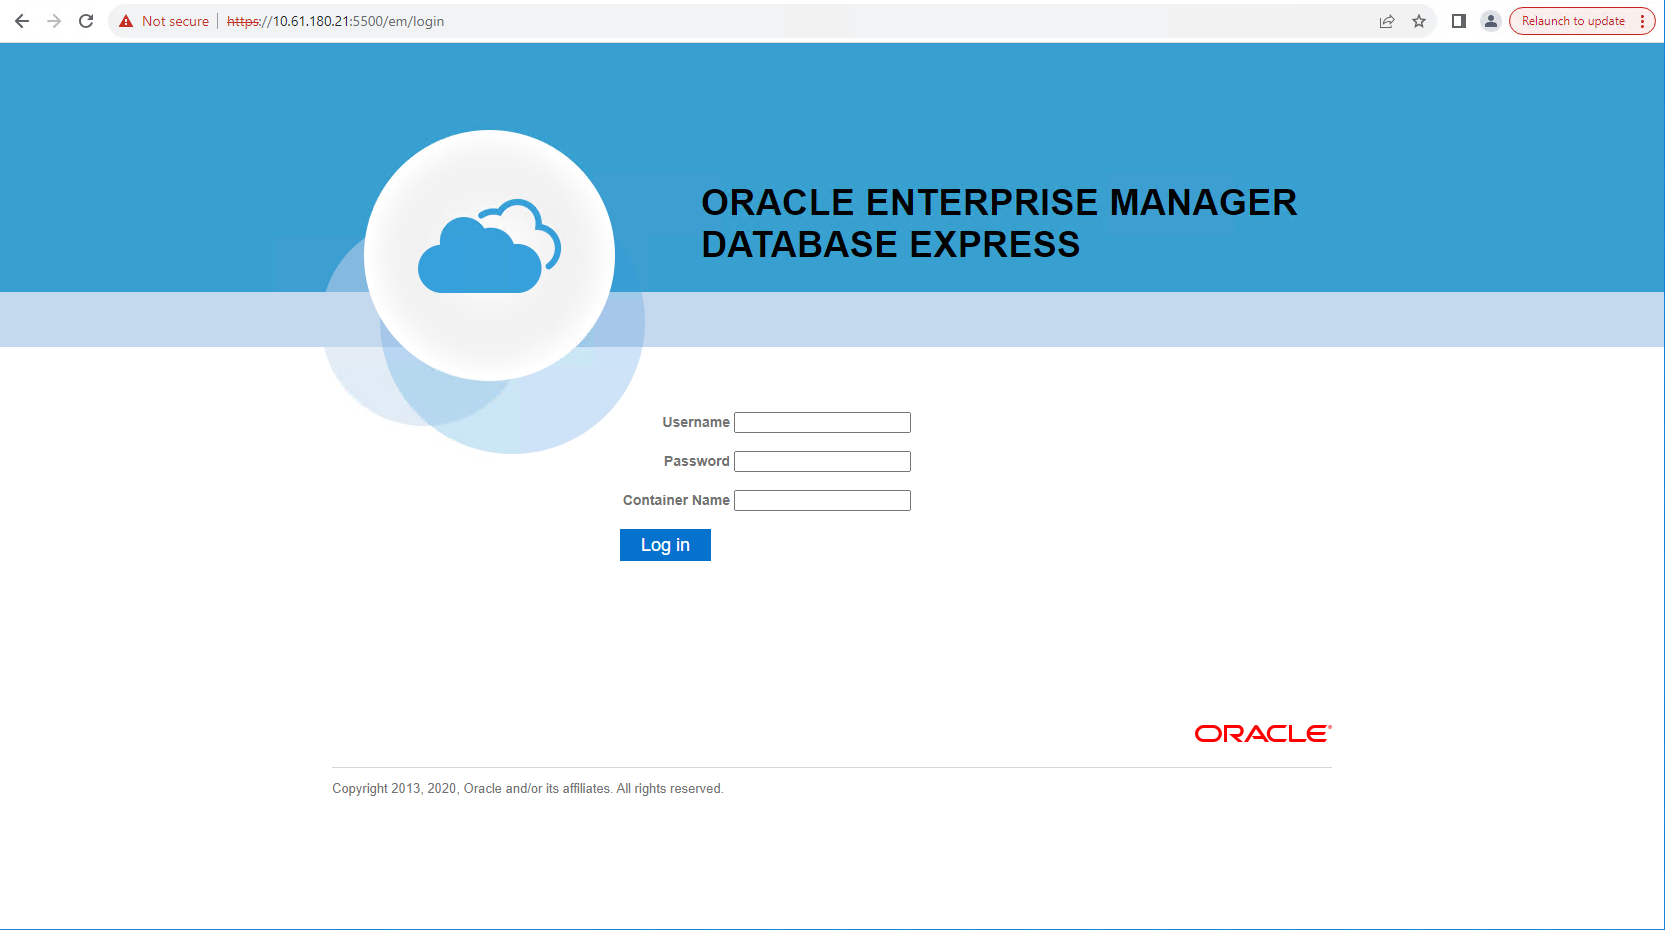 이 이미지는 Oracle Enterprise Manager Express의 로그인 화면을 제공합니다